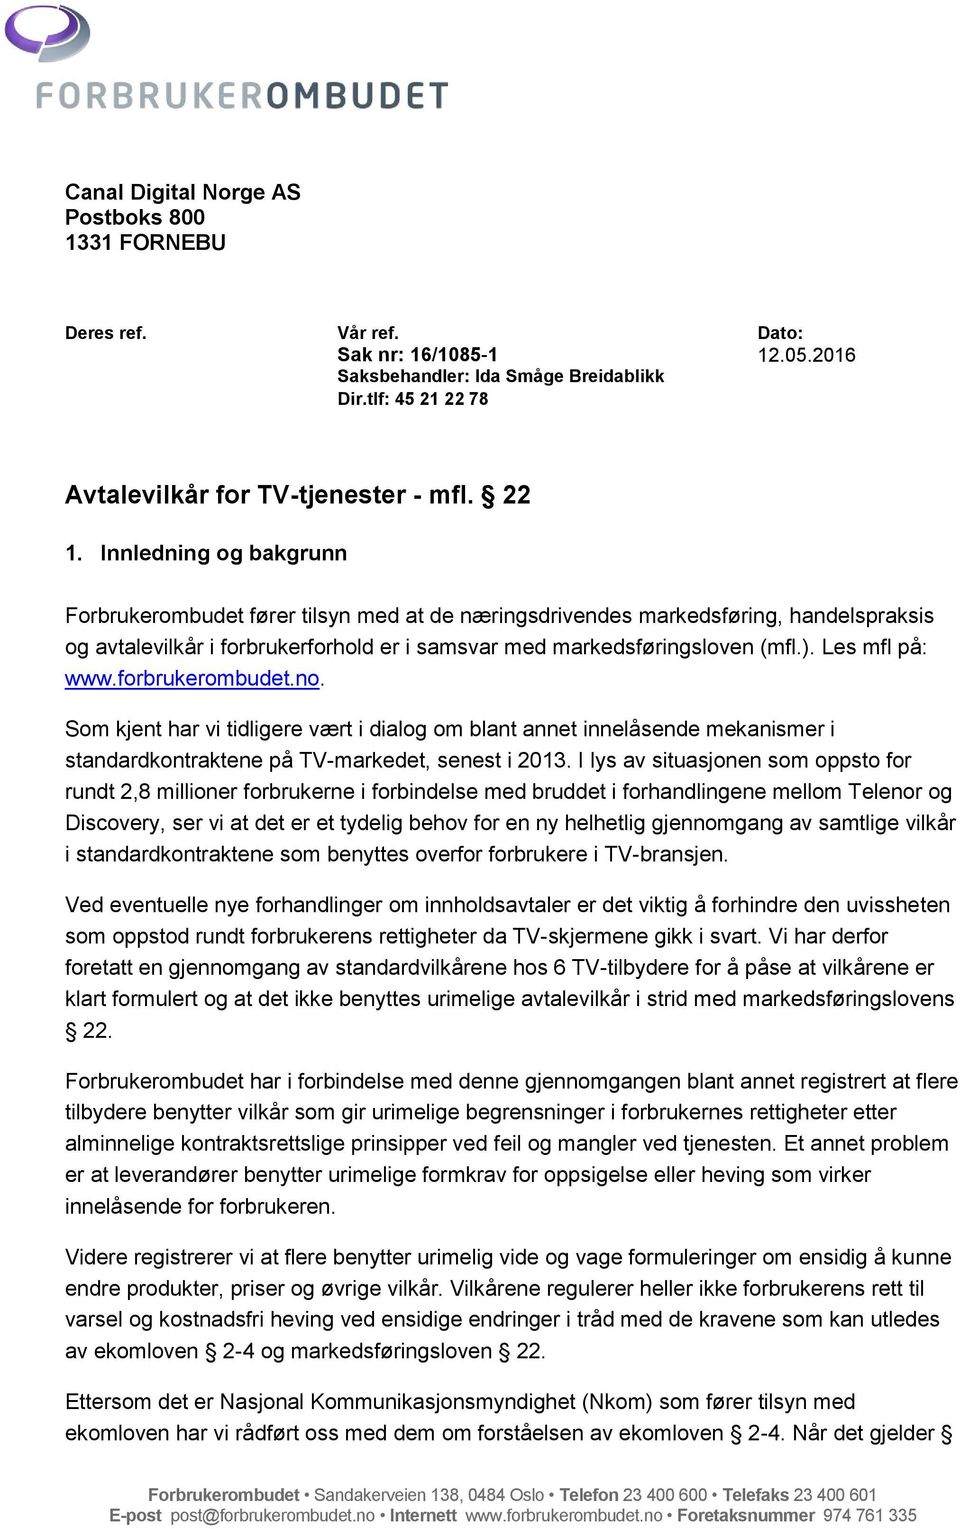 Les mfl på: www.forbrukerombudet.no. Som kjent har vi tidligere vært i dialog om blant annet innelåsende mekanismer i standardkontraktene på TV-markedet, senest i 2013.